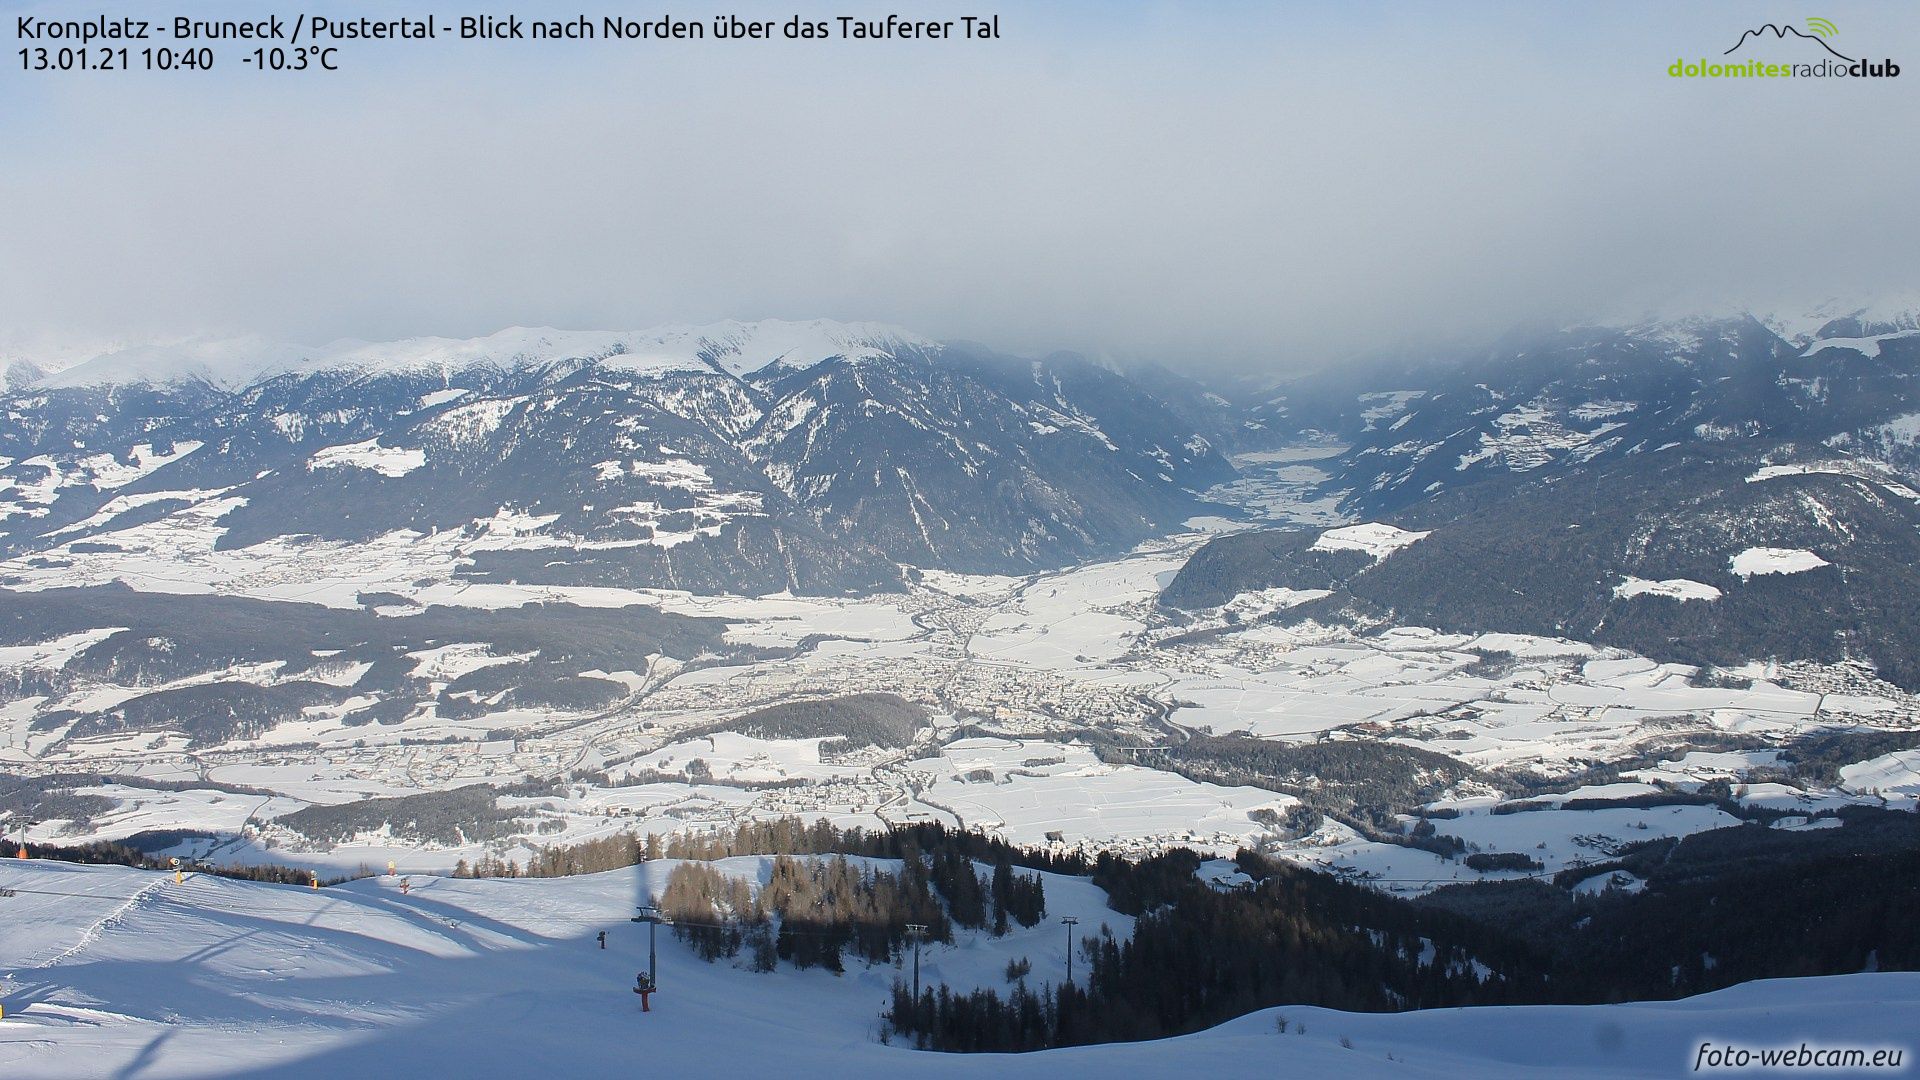 Vanuit Kronplatz in Zuid-Tirol zijn de dichte wolken bij de alpenhoofdkam zichtbaar, maar verder naar het zuiden is het overwegend zonnig